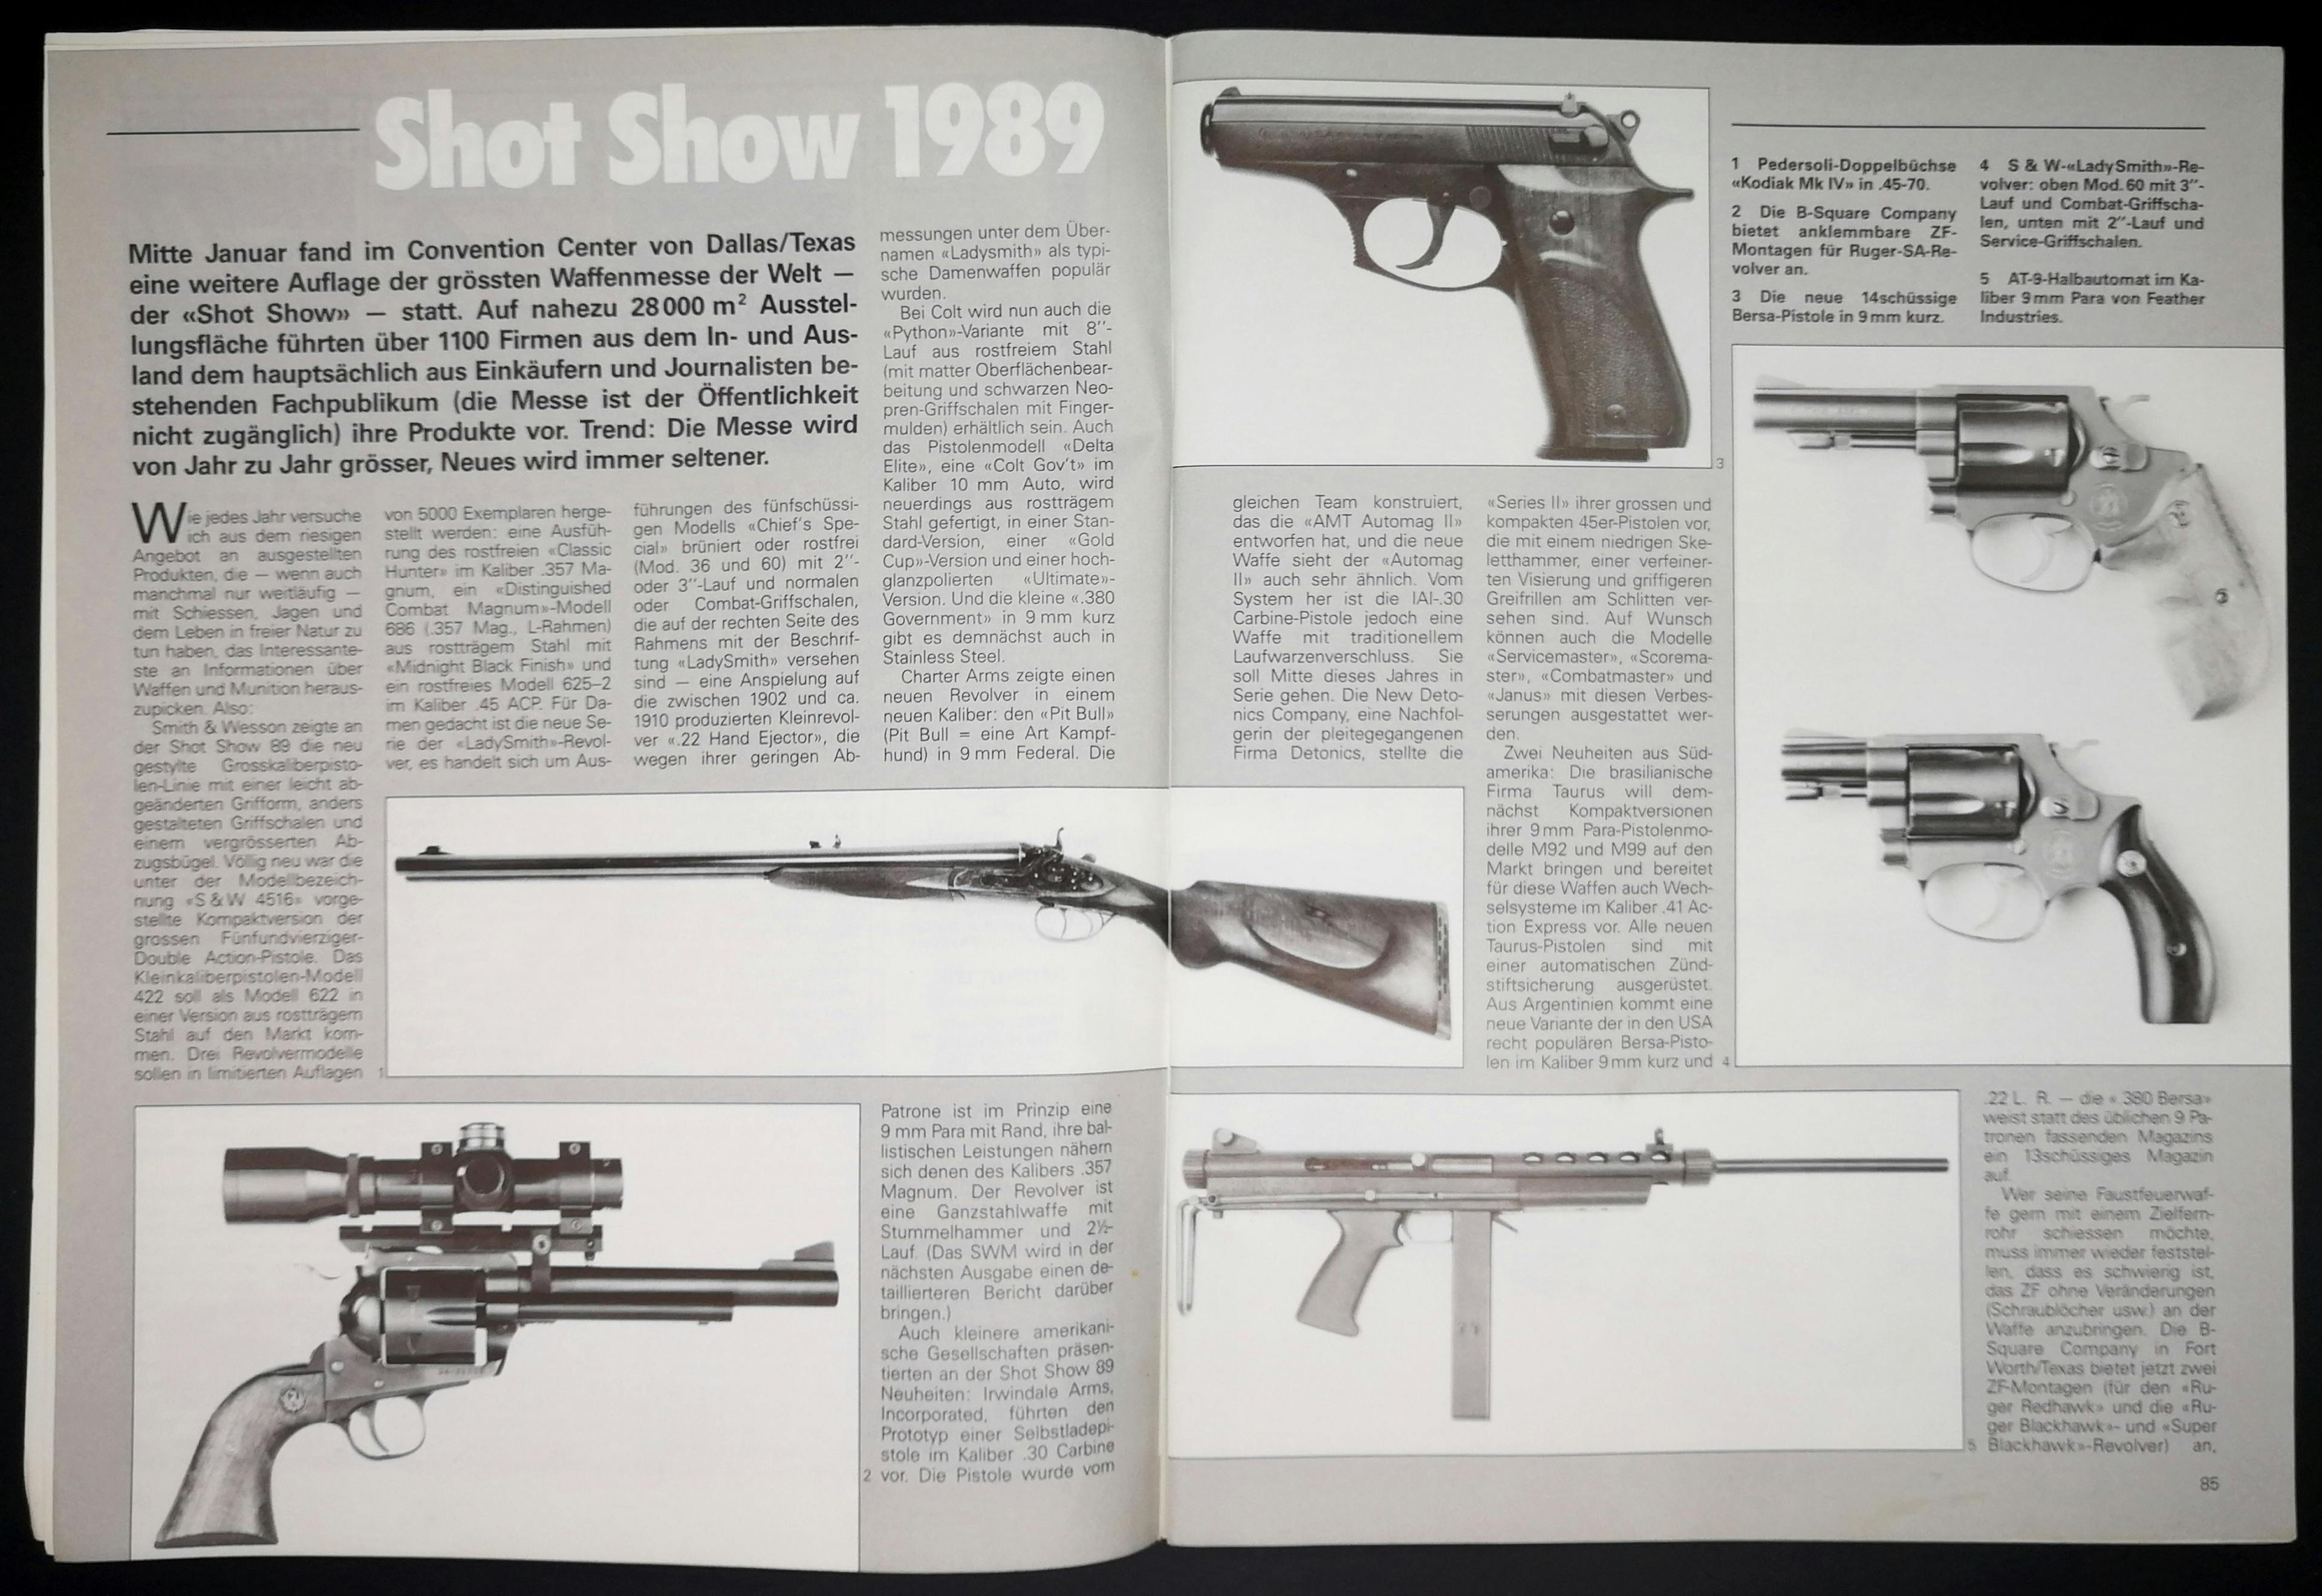 IWA 1989: Pedersoli Kodiak MkIV in 45-70 Government, Zf-Montagen für Ruger Sinle Action Revolver, 9mm Bersa Pistole, 2" Lady Smith Revolver und das Klappergestell AT-9 von Feather Industries.